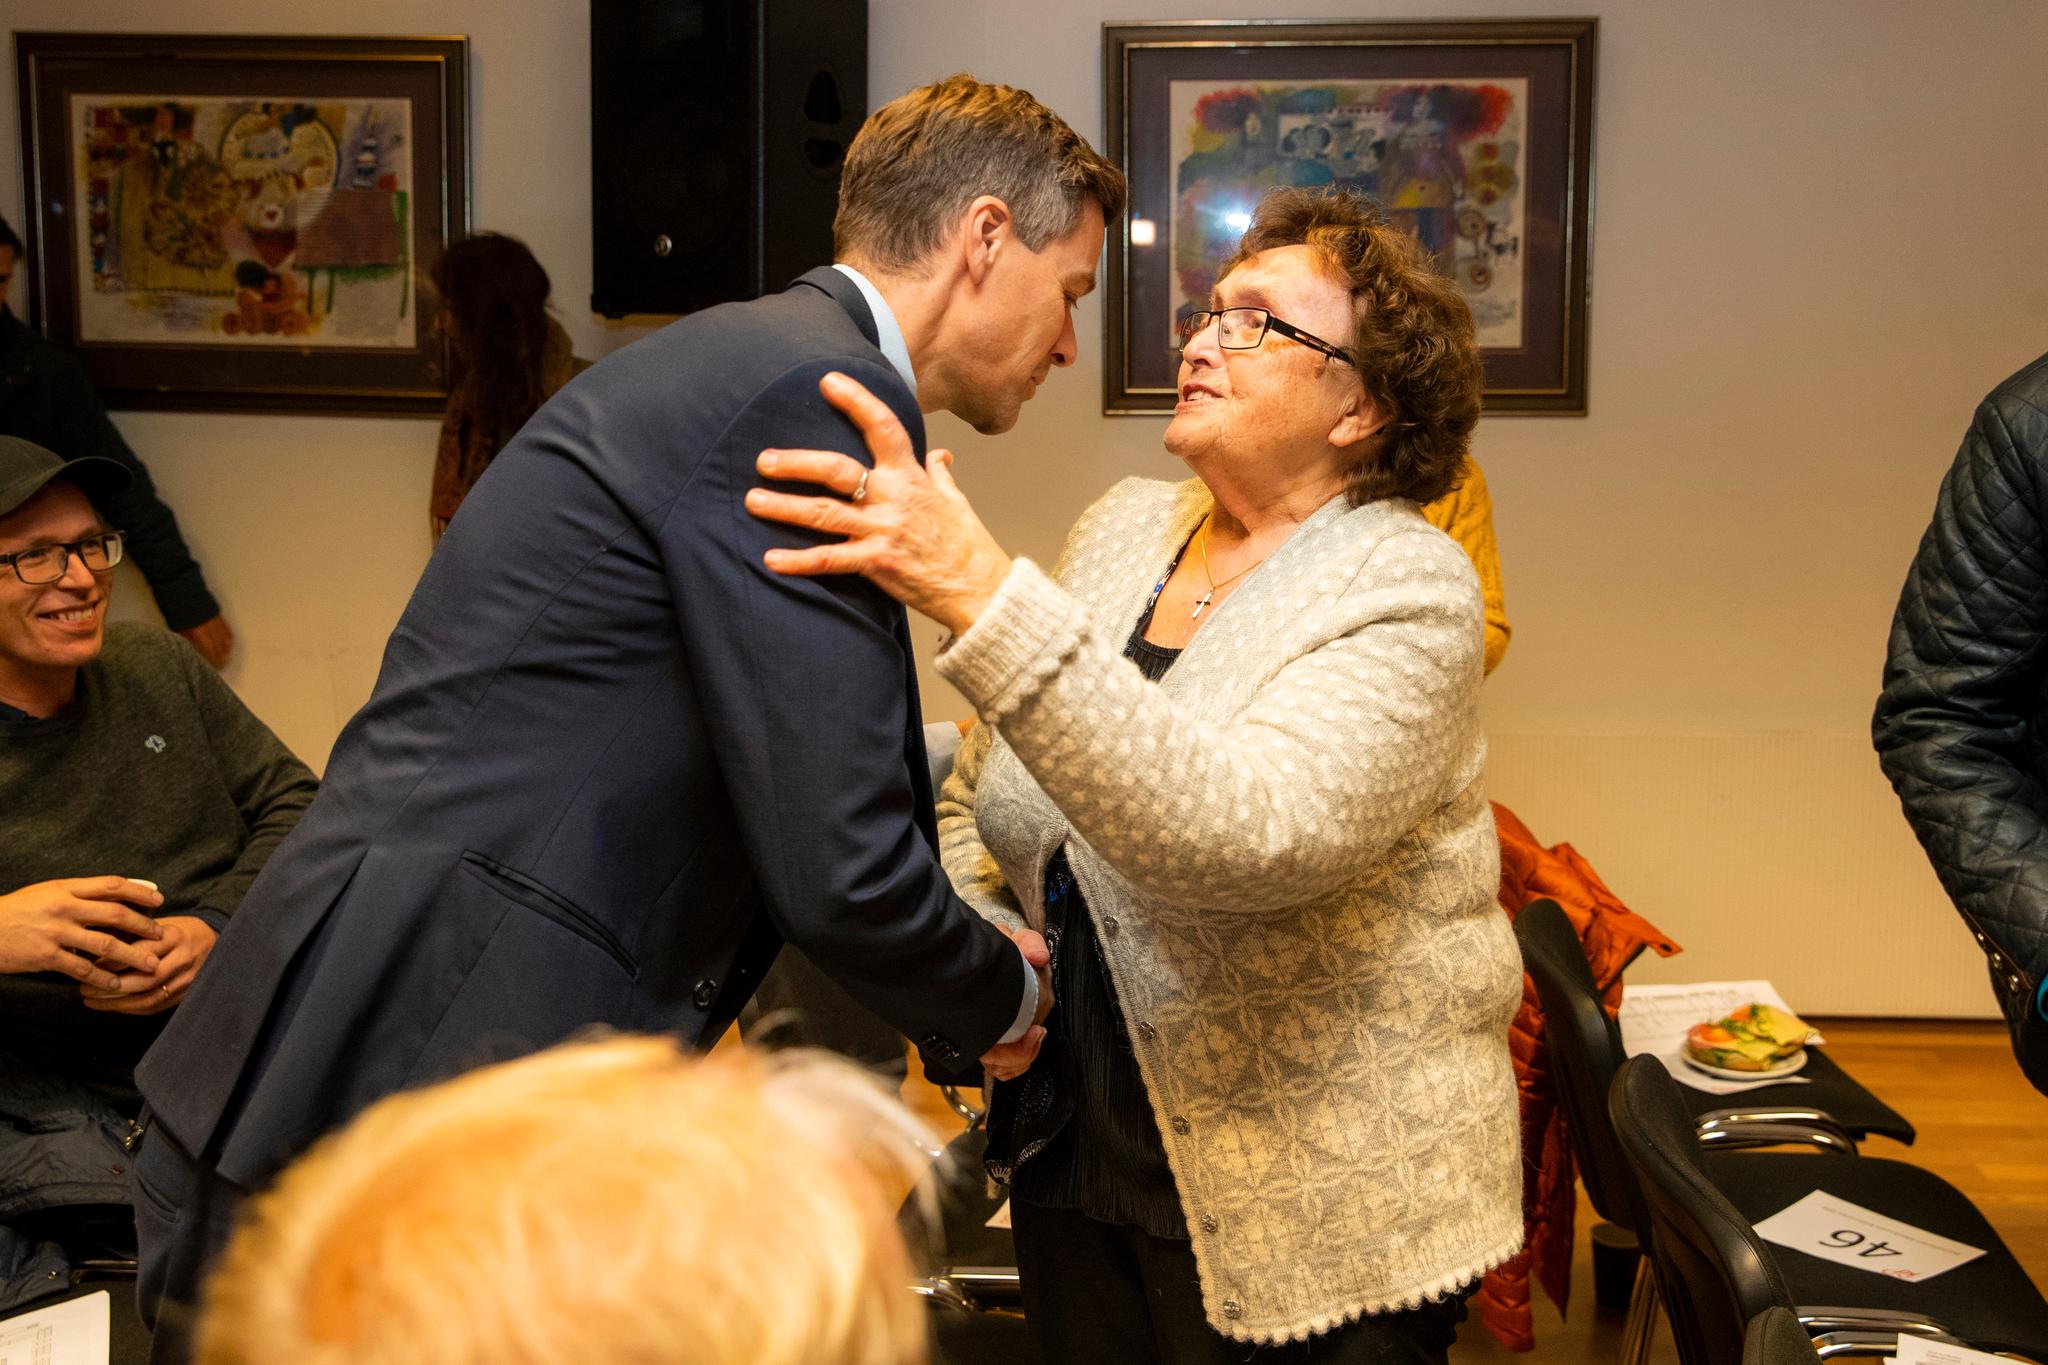  Knut Arild Hareide hilser på Reidun Brusletten, landets første bistandsminister, nå lokallagsleder i Nes KrF. Hun oppfordret årsmøtet om å gå mot venstre.